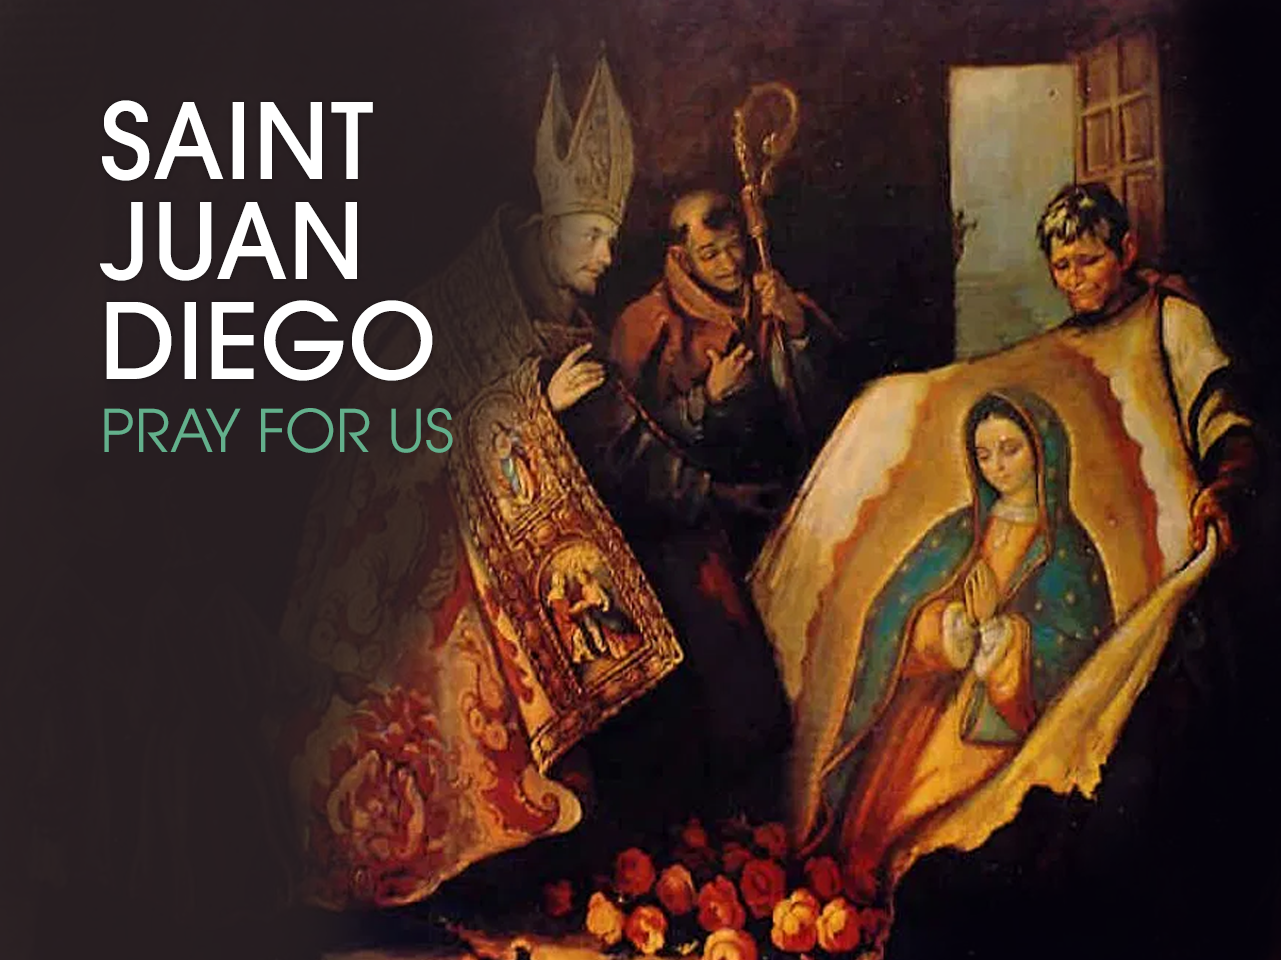 St. Juan Diego